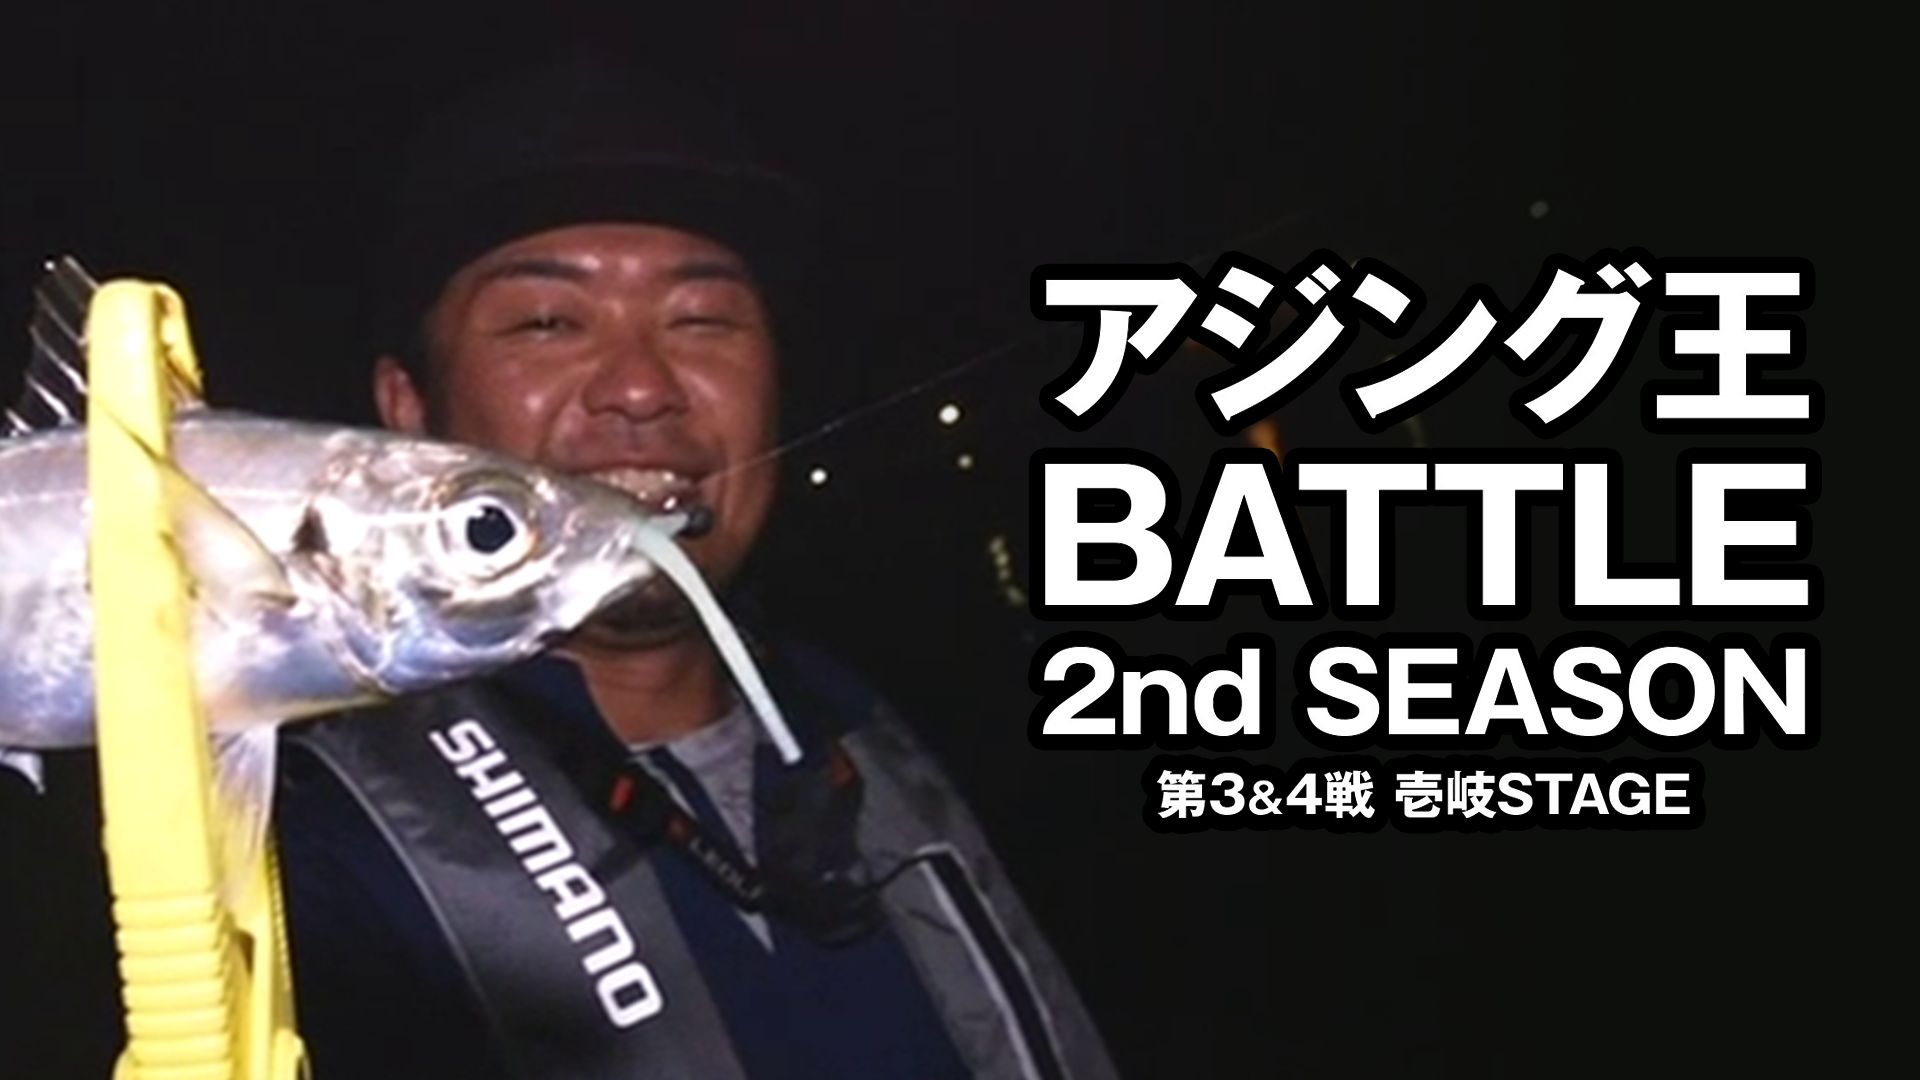 アジング王BATTLE 2nd SEASON 第3&4戦 壱岐STAGE